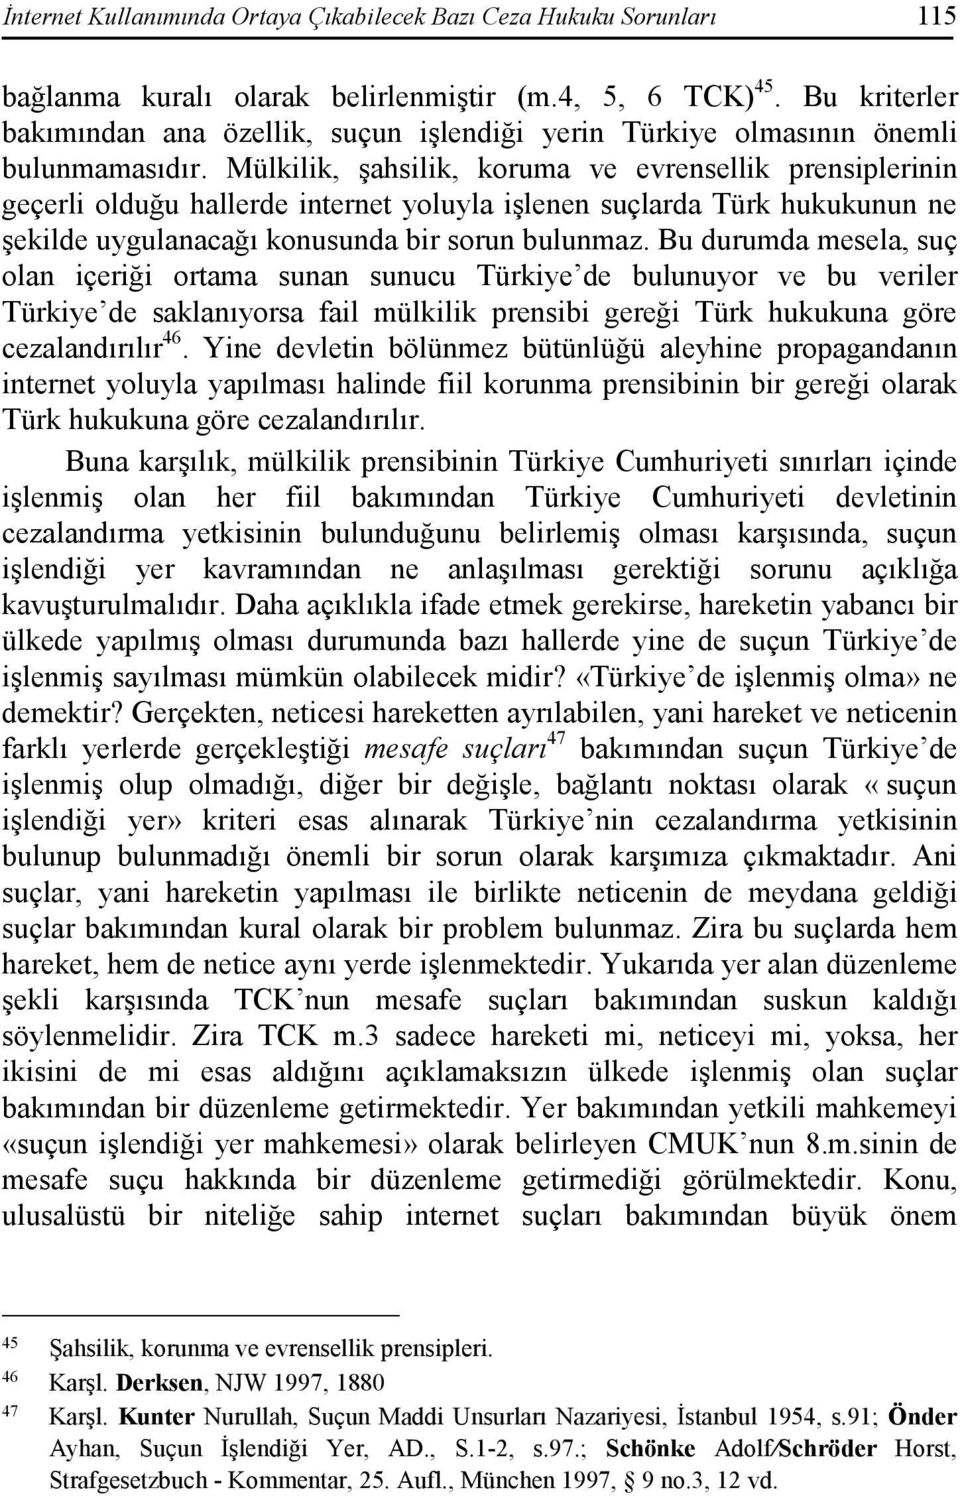 Mülkilik, şahsilik, koruma ve evrensellik prensiplerinin geçerli olduğu hallerde internet yoluyla işlenen suçlarda Türk hukukunun ne şekilde uygulanacağı konusunda bir sorun bulunmaz.